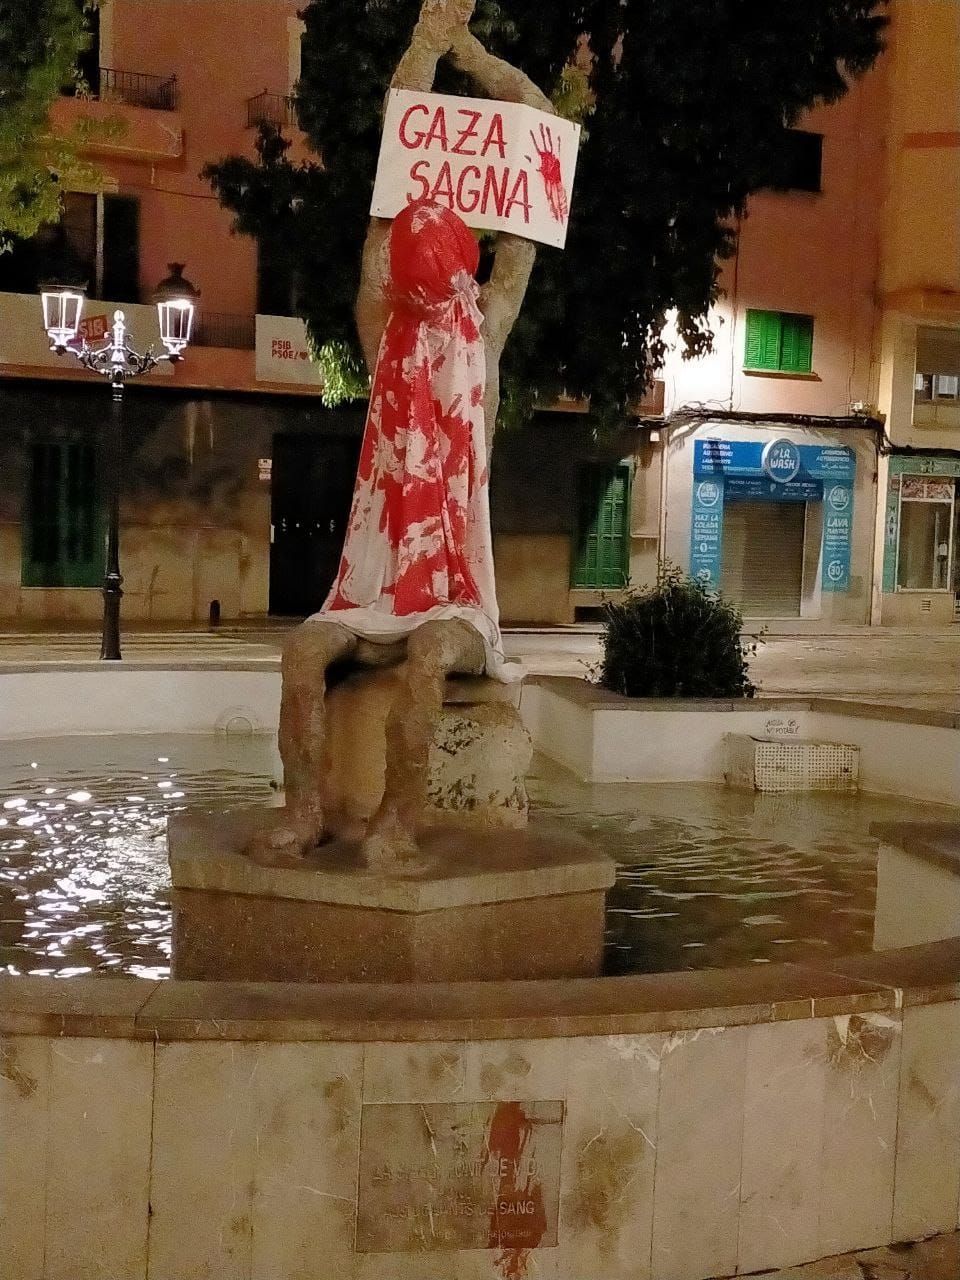 Esculturas de toda Mallorca amanecen con carteles a favor de Palestina: "Paremos el genocidio"